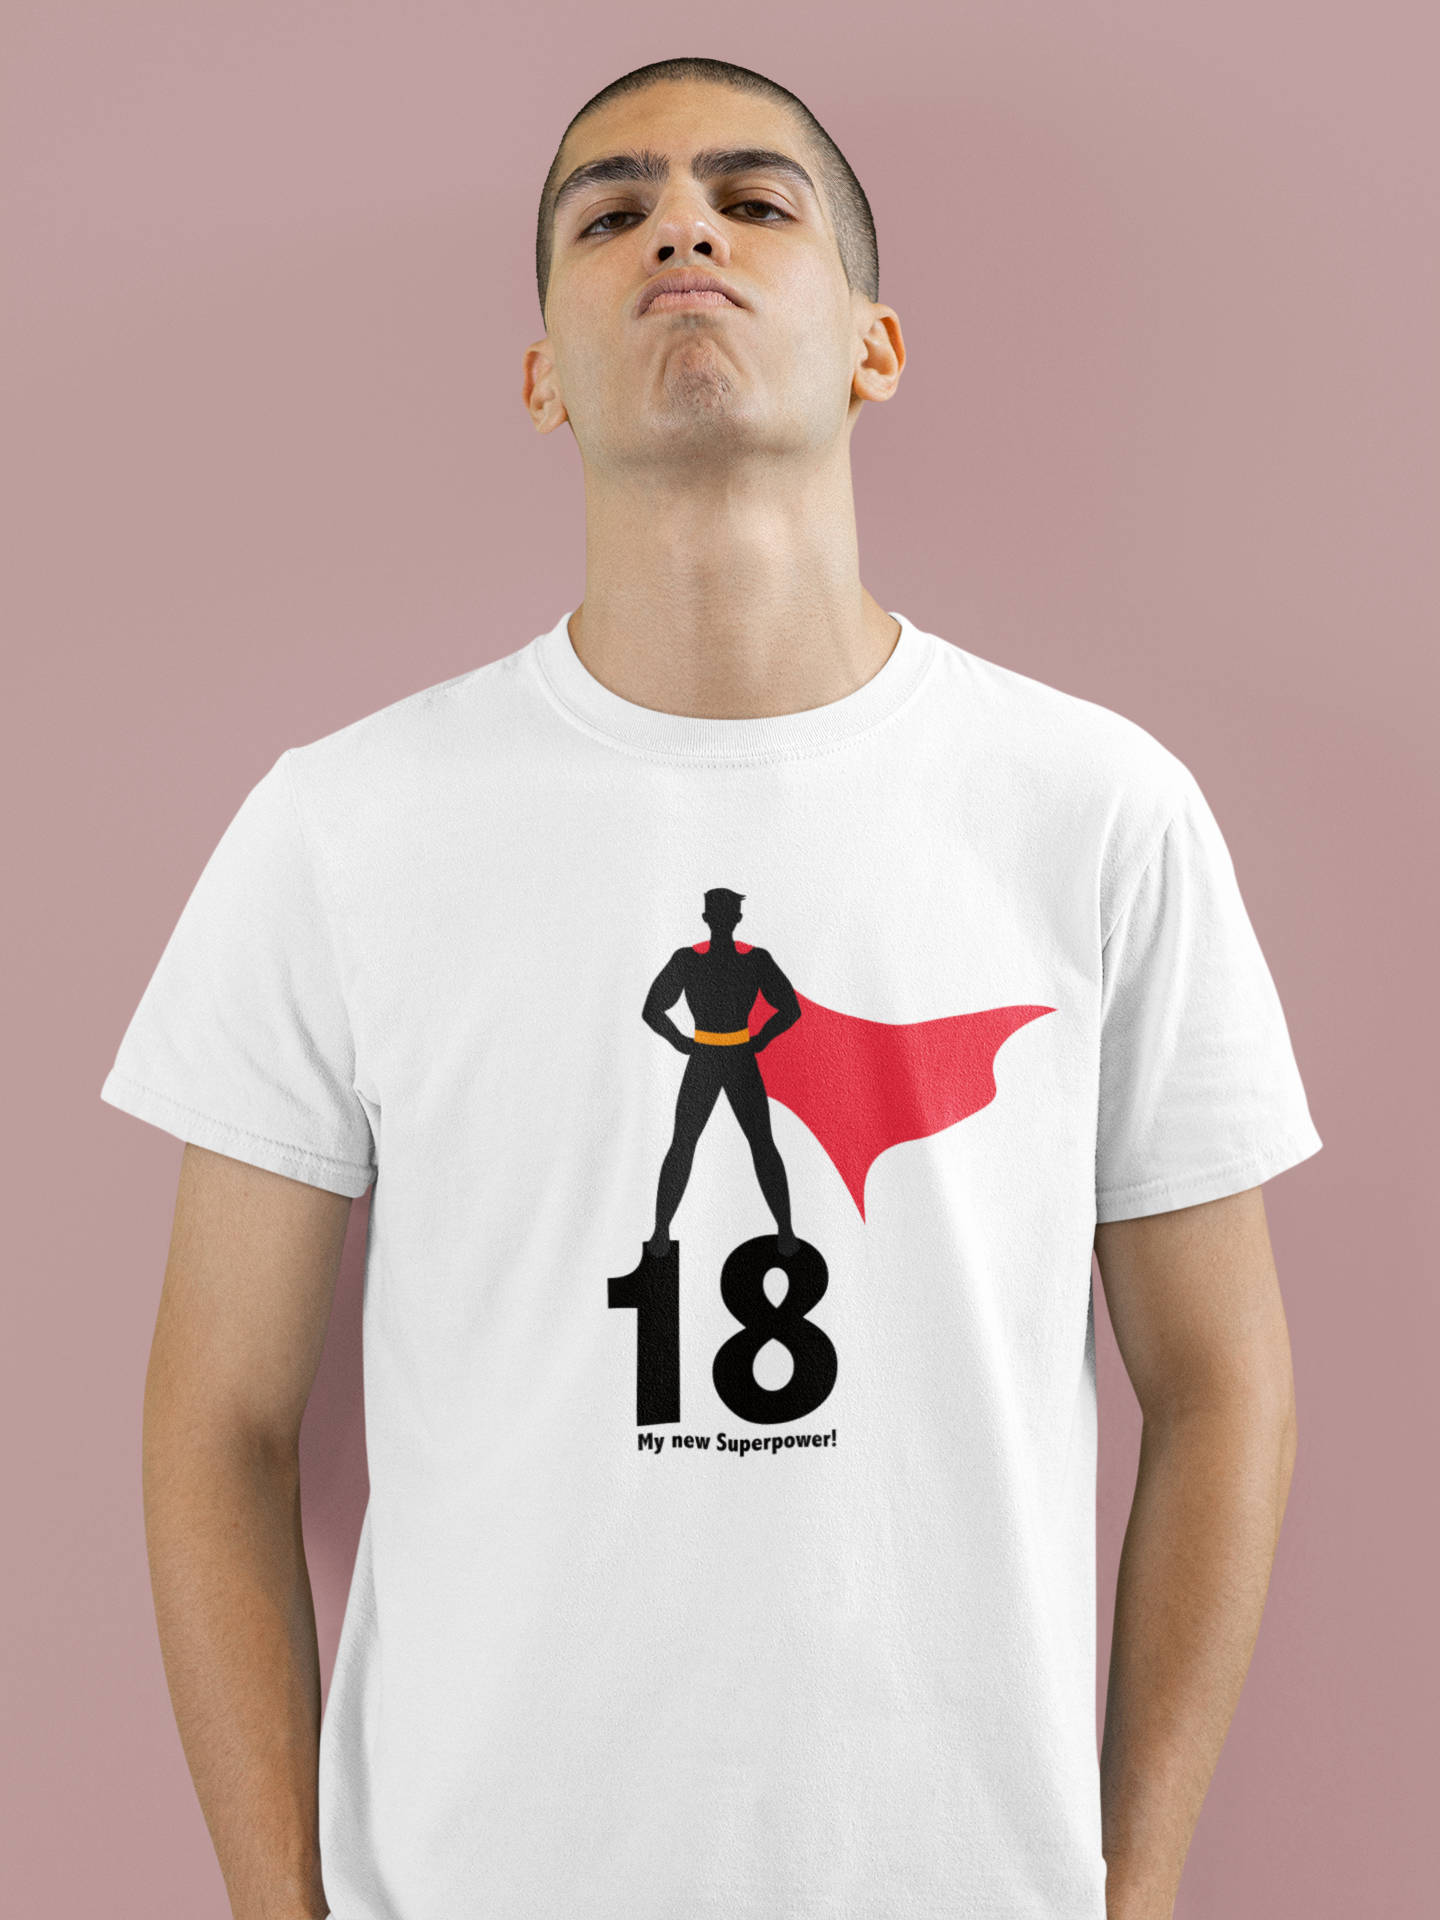 Tshirt zum 18. Geburtstag - my new superpower